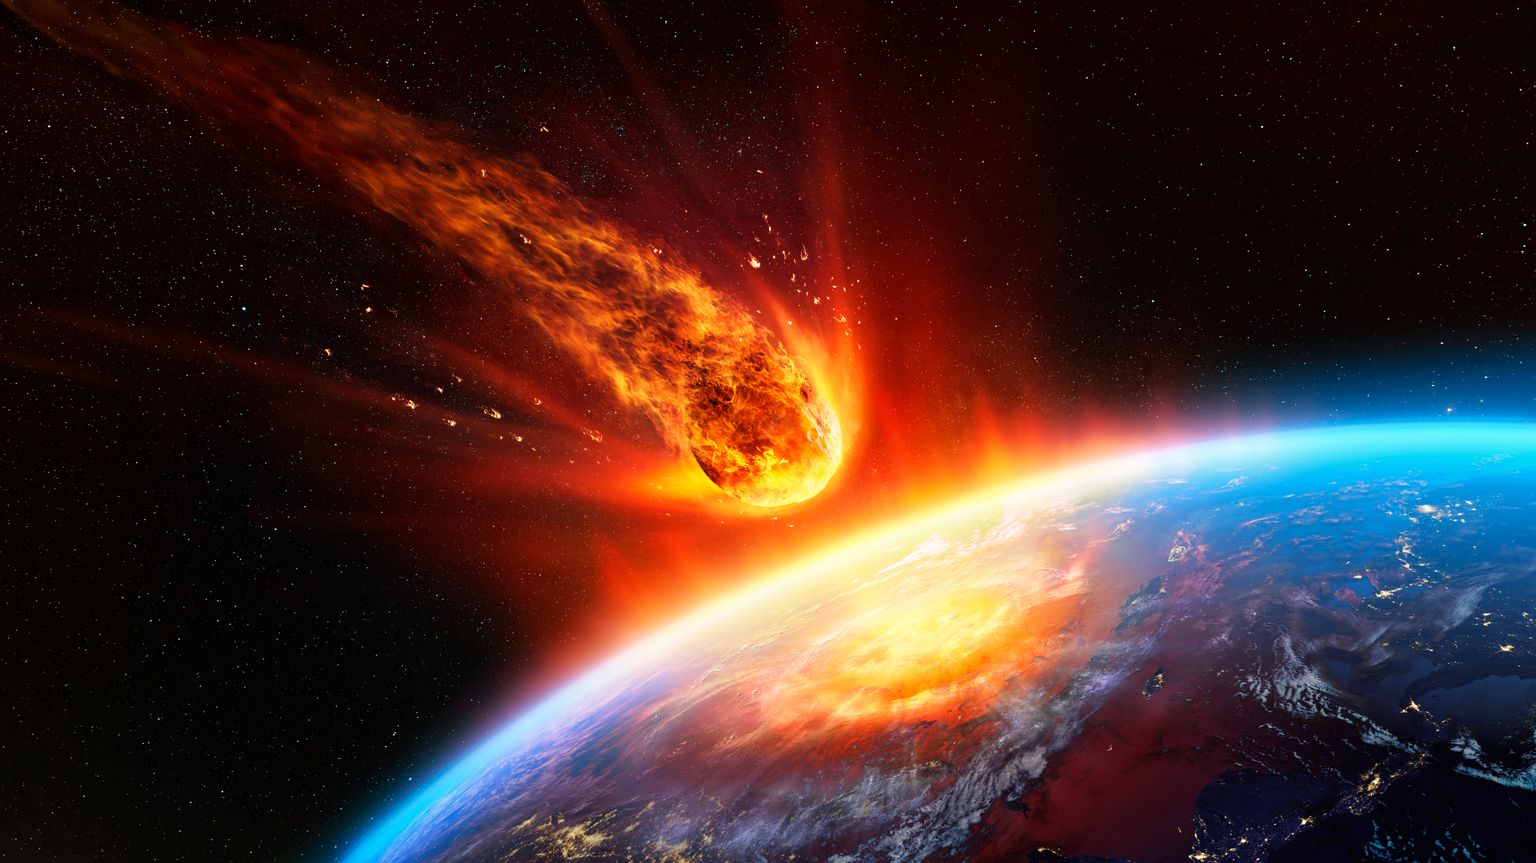 Конец цивилизации из-за столкновения с астероидом неизбежен. Иллюстративное фото